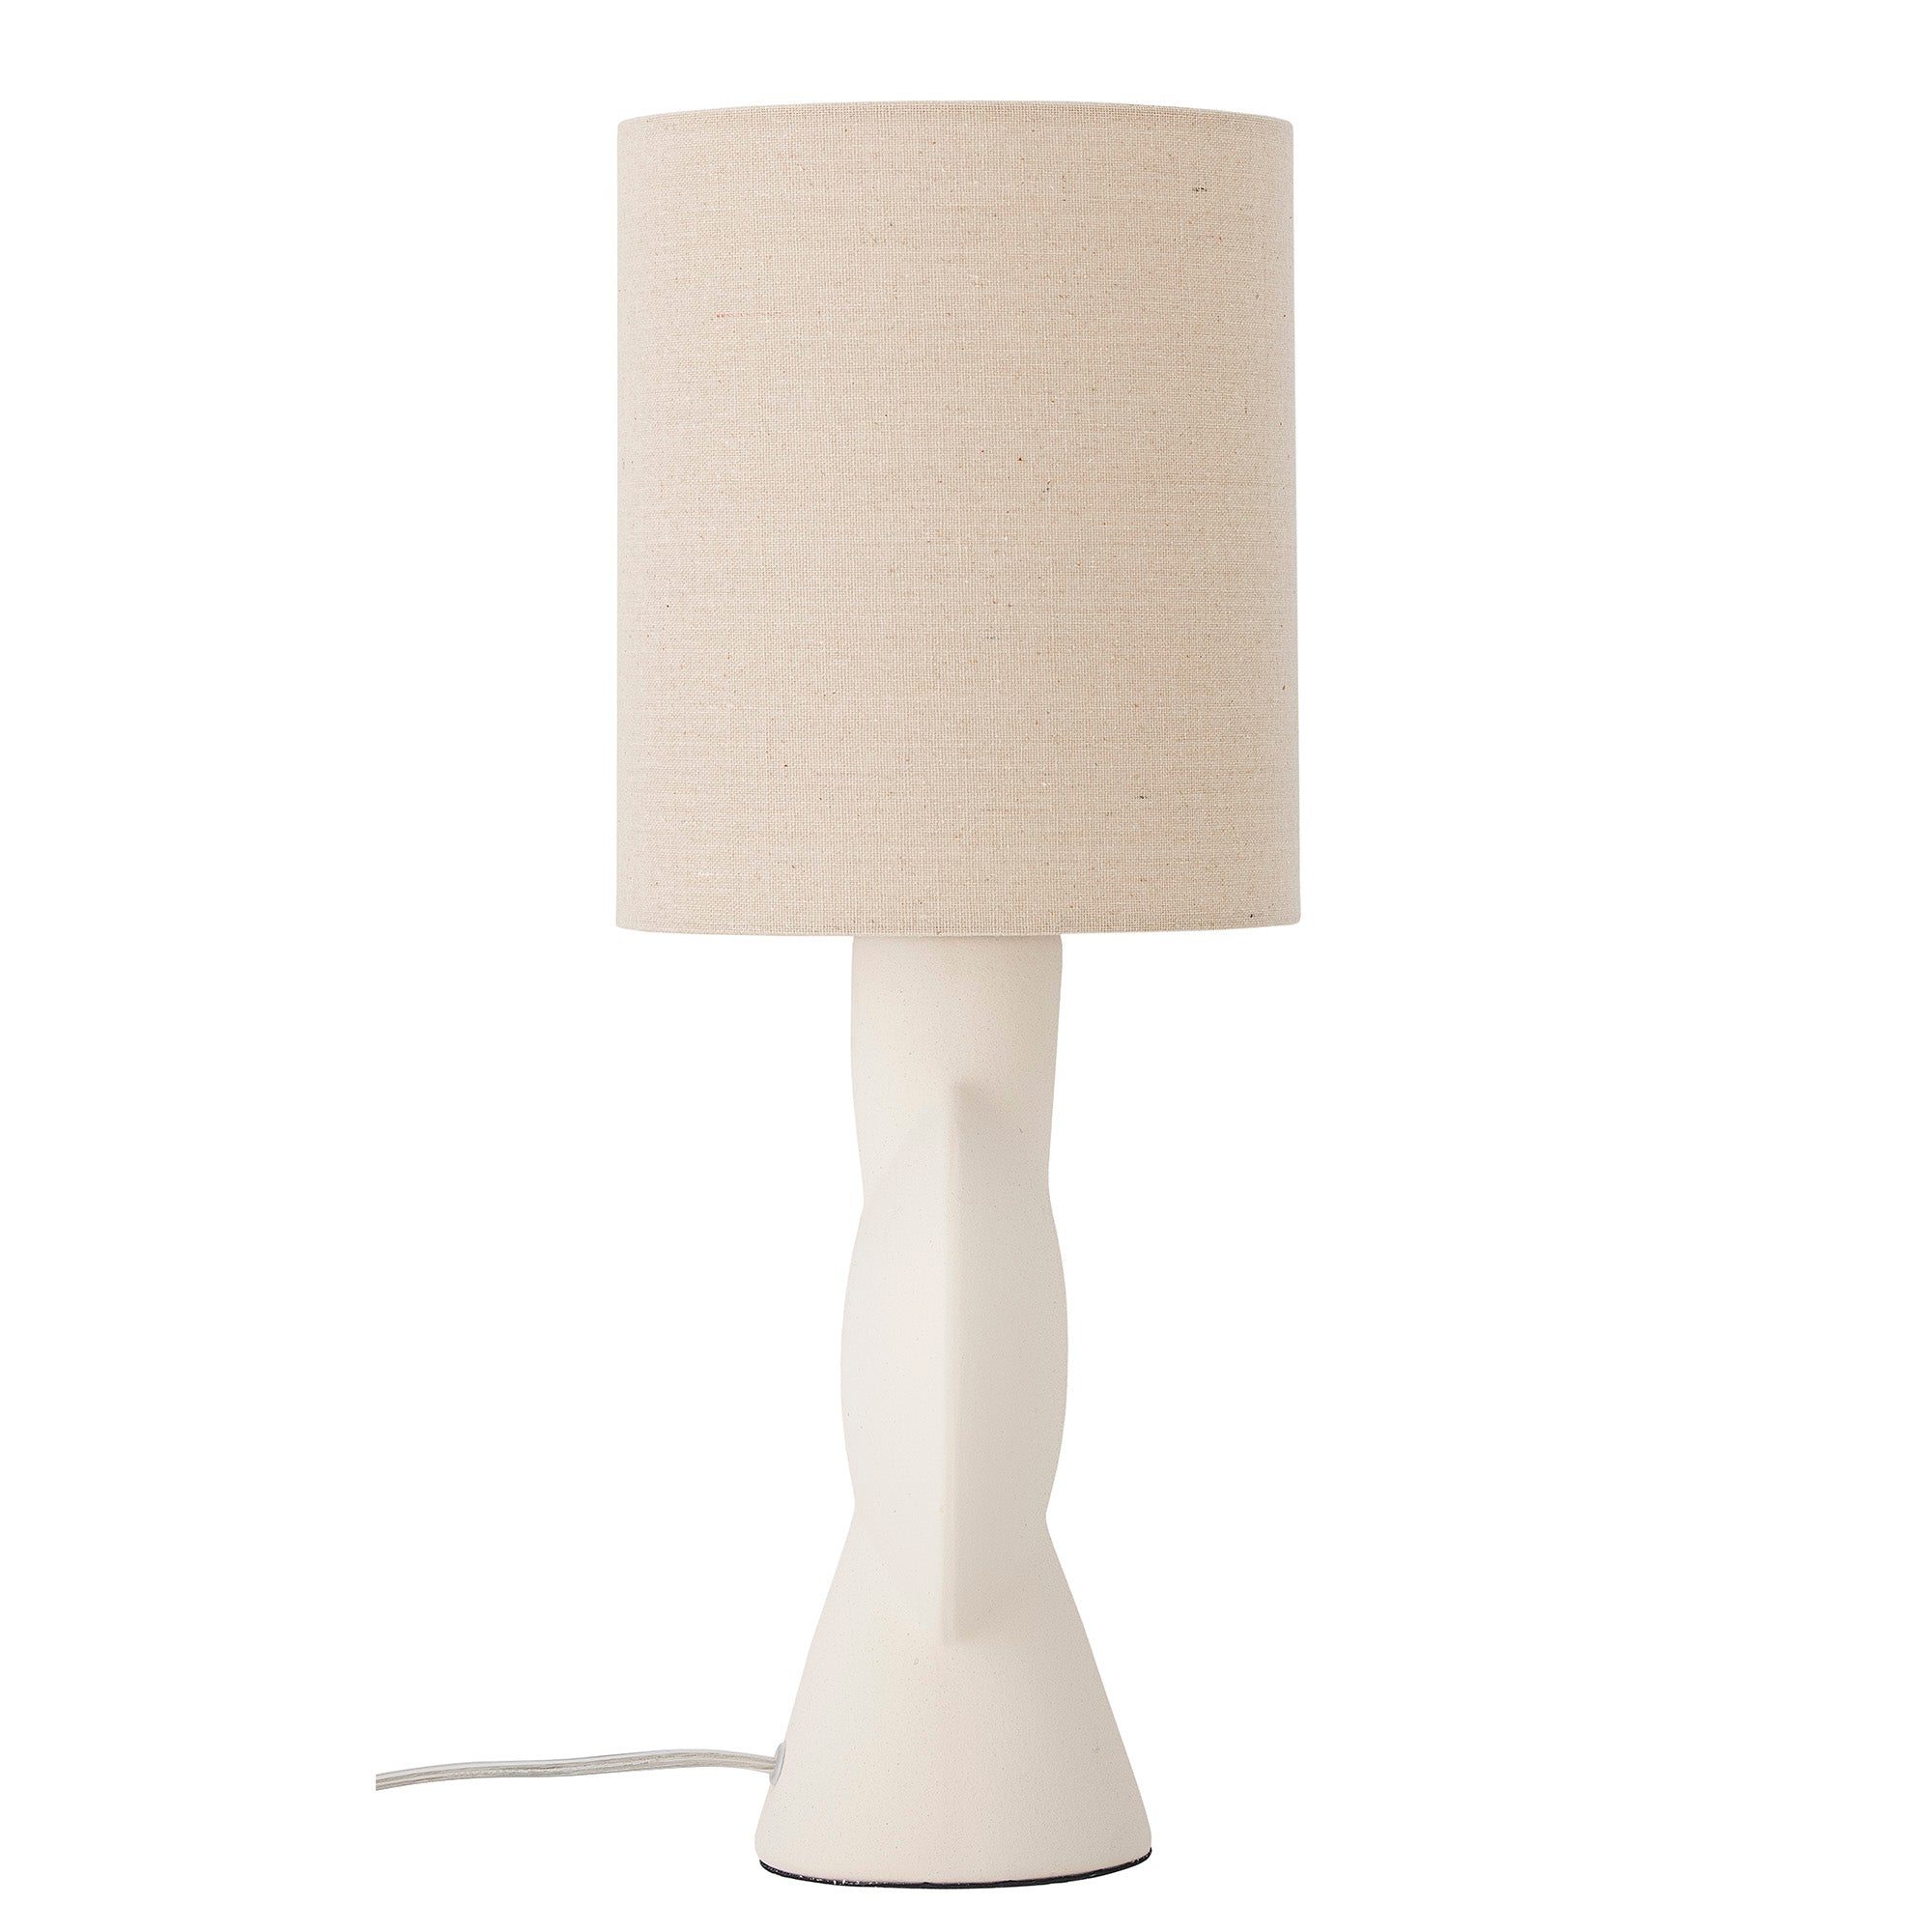 Sergio table lamp - cream